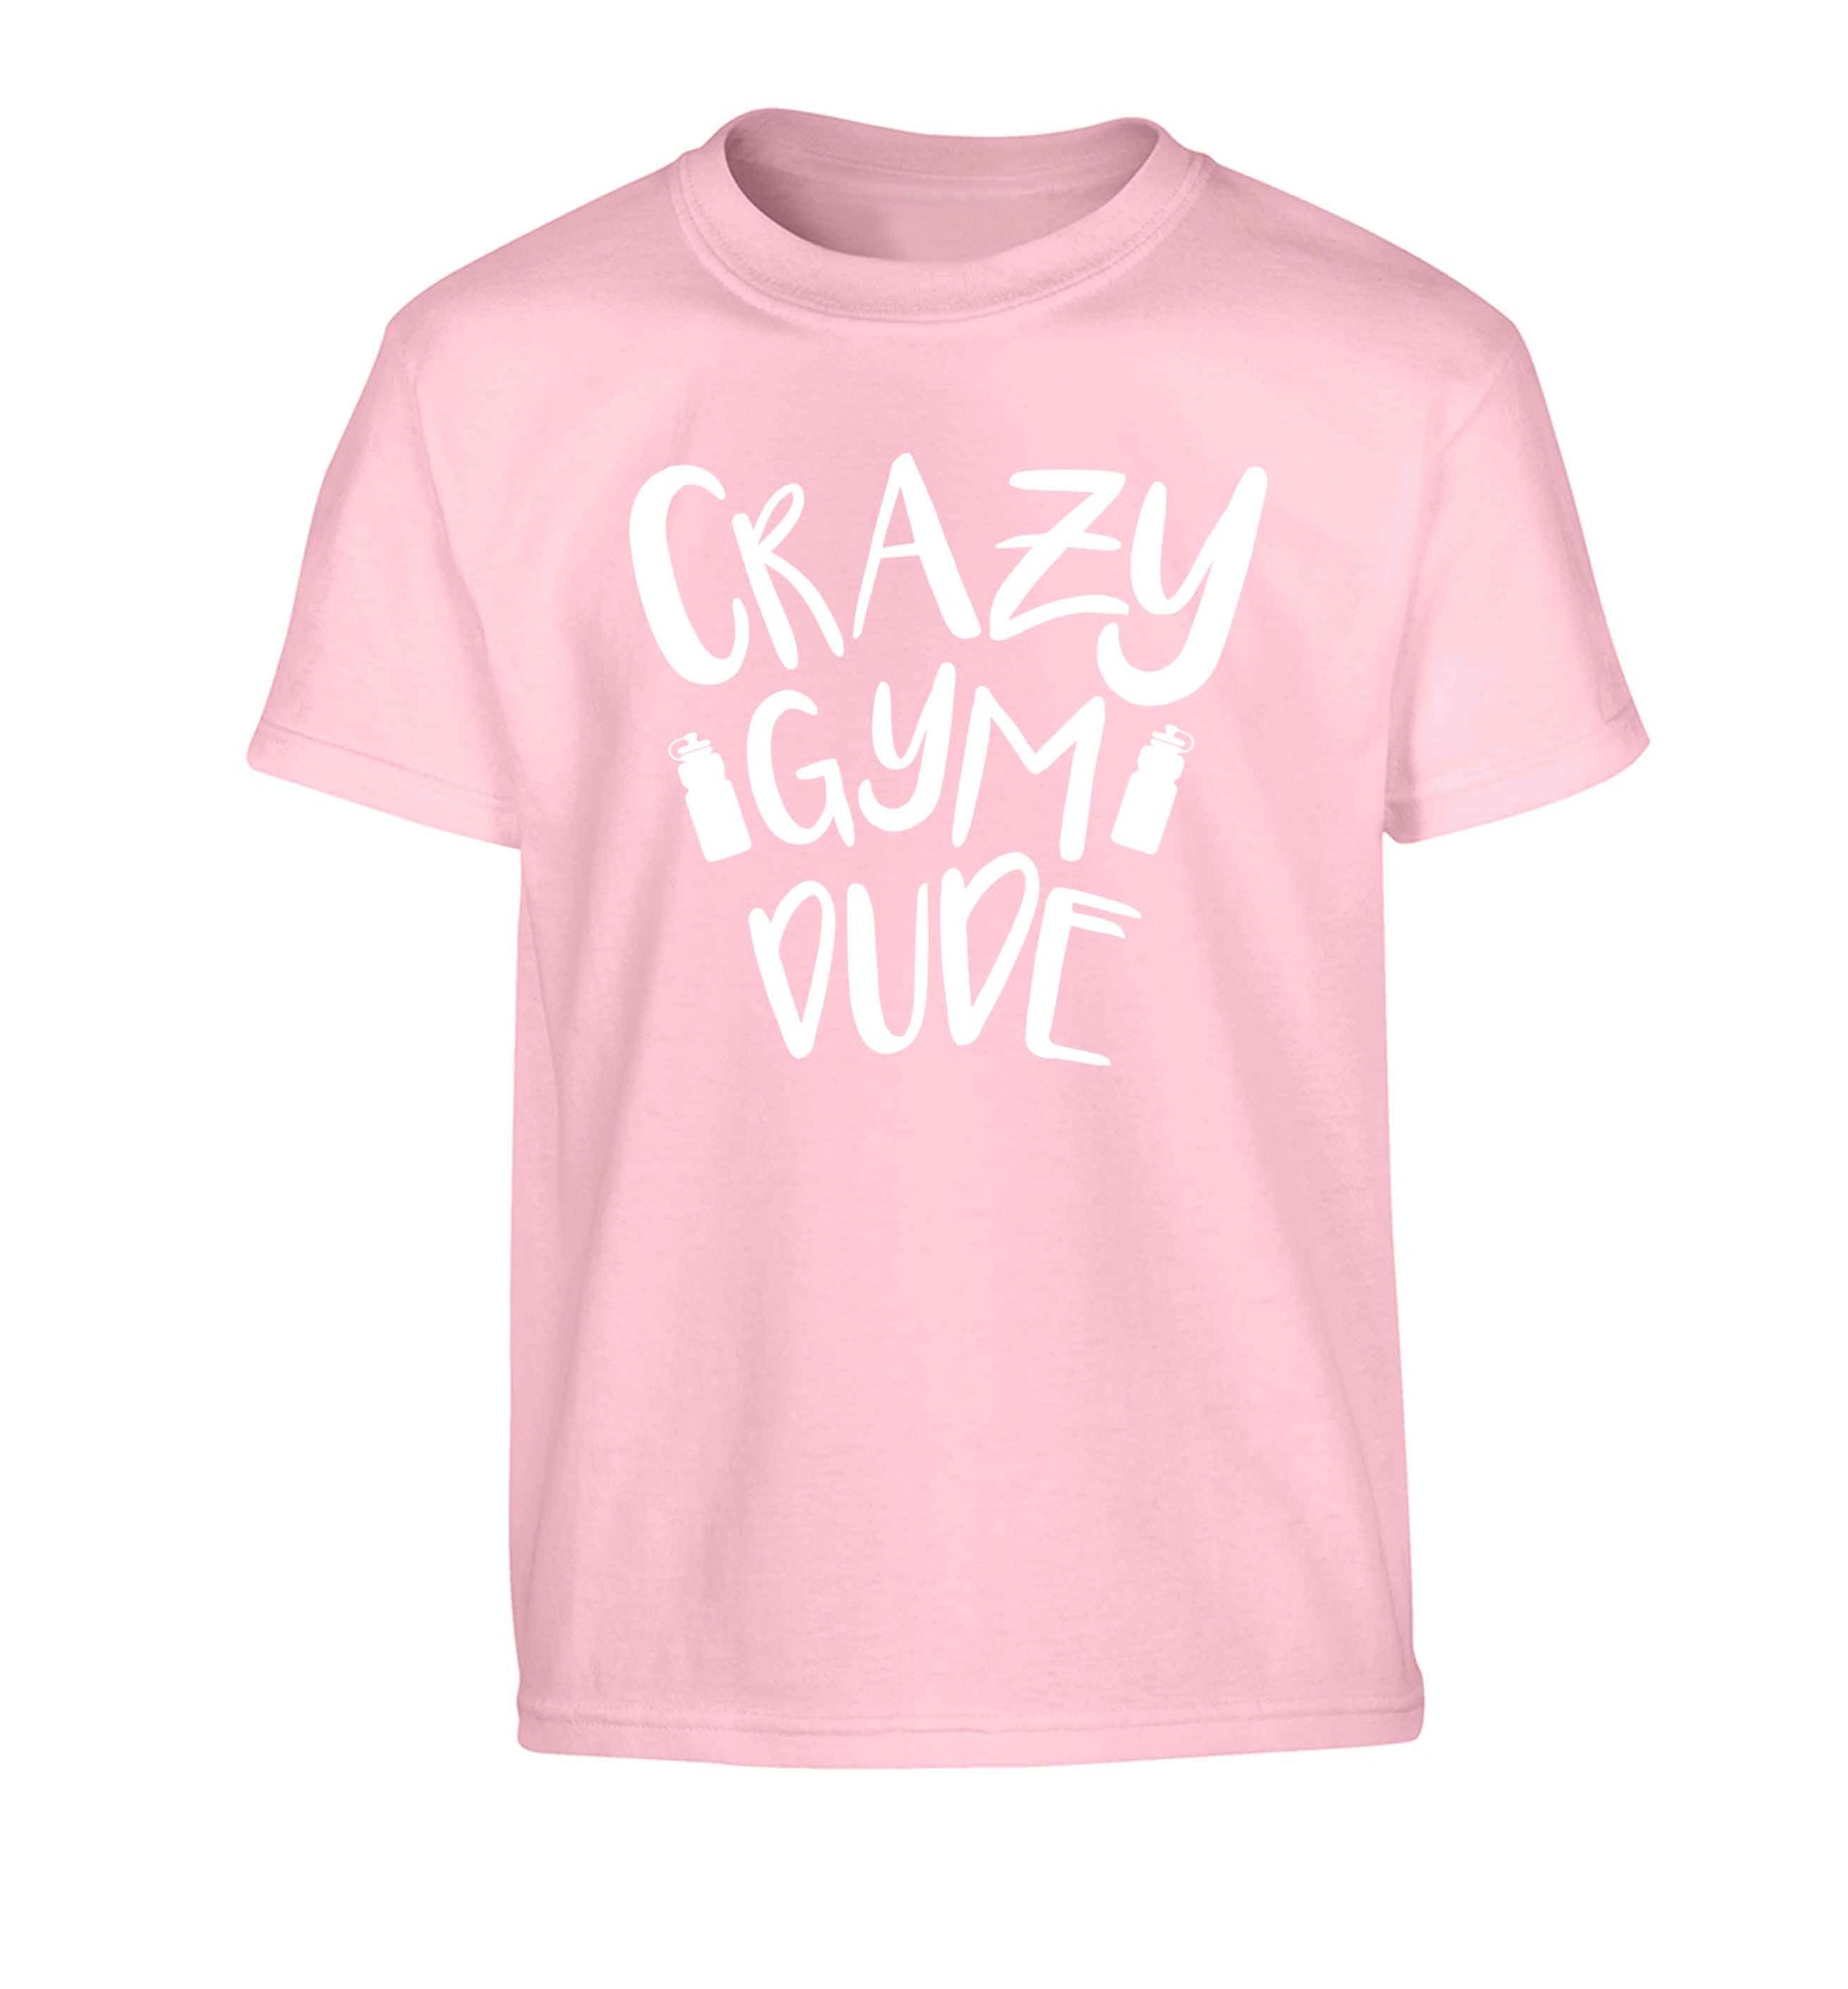 Crazy gym dude Children's light pink Tshirt 12-13 Years